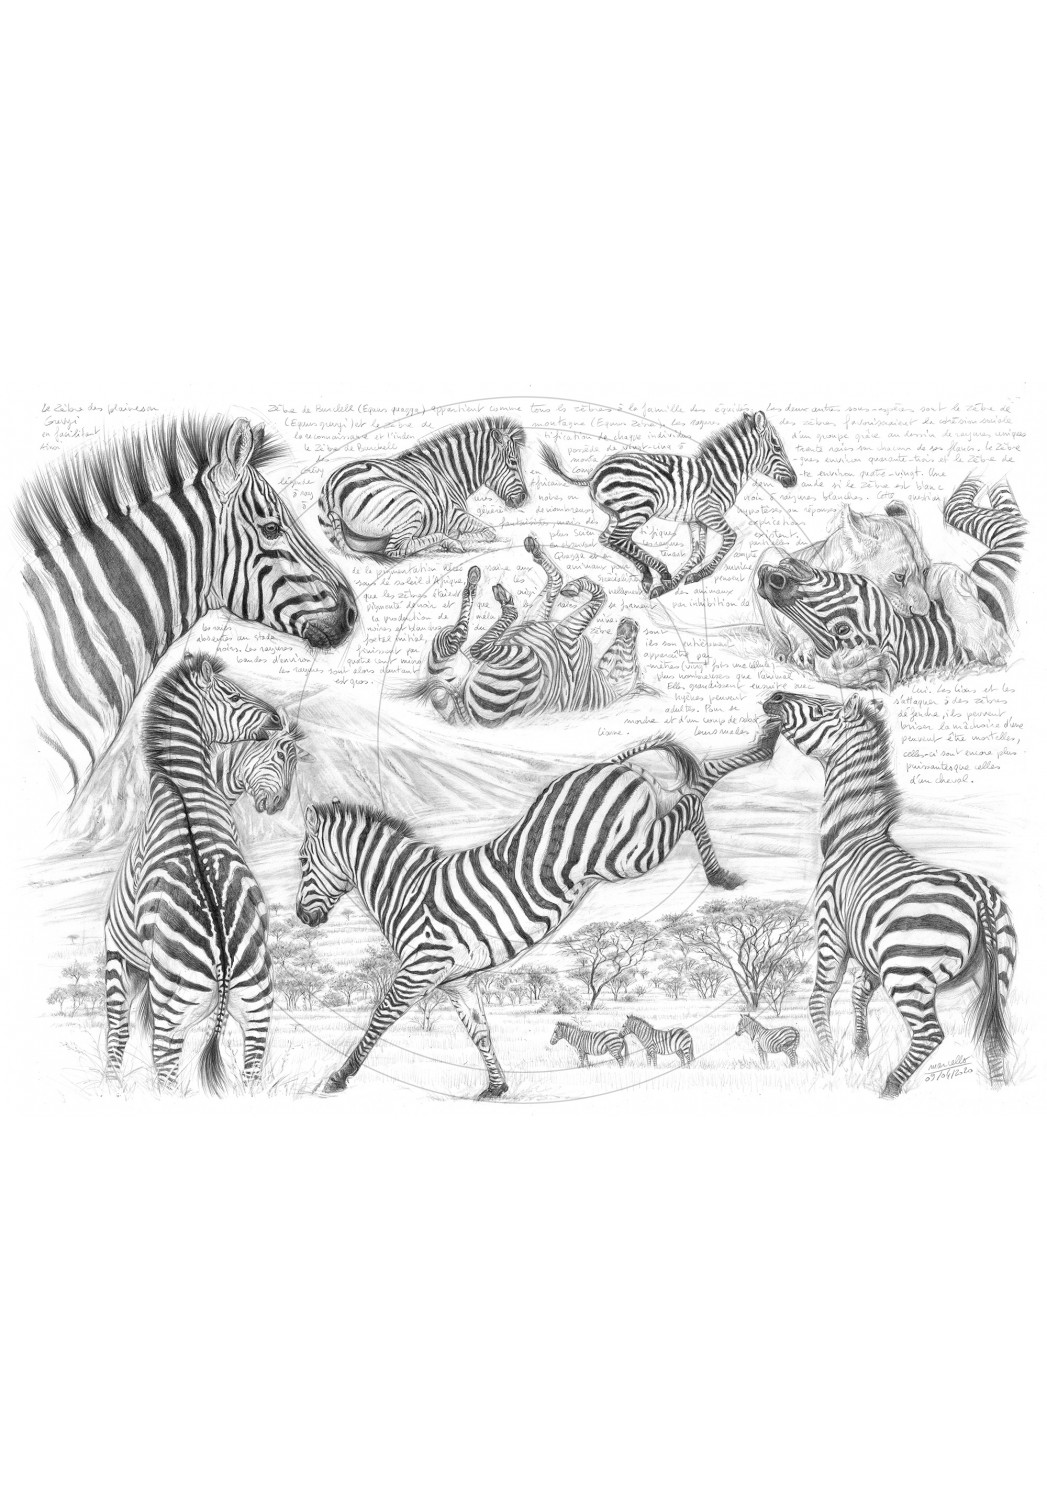 Marcello-art: African Wildlife 403 - Equus quagga